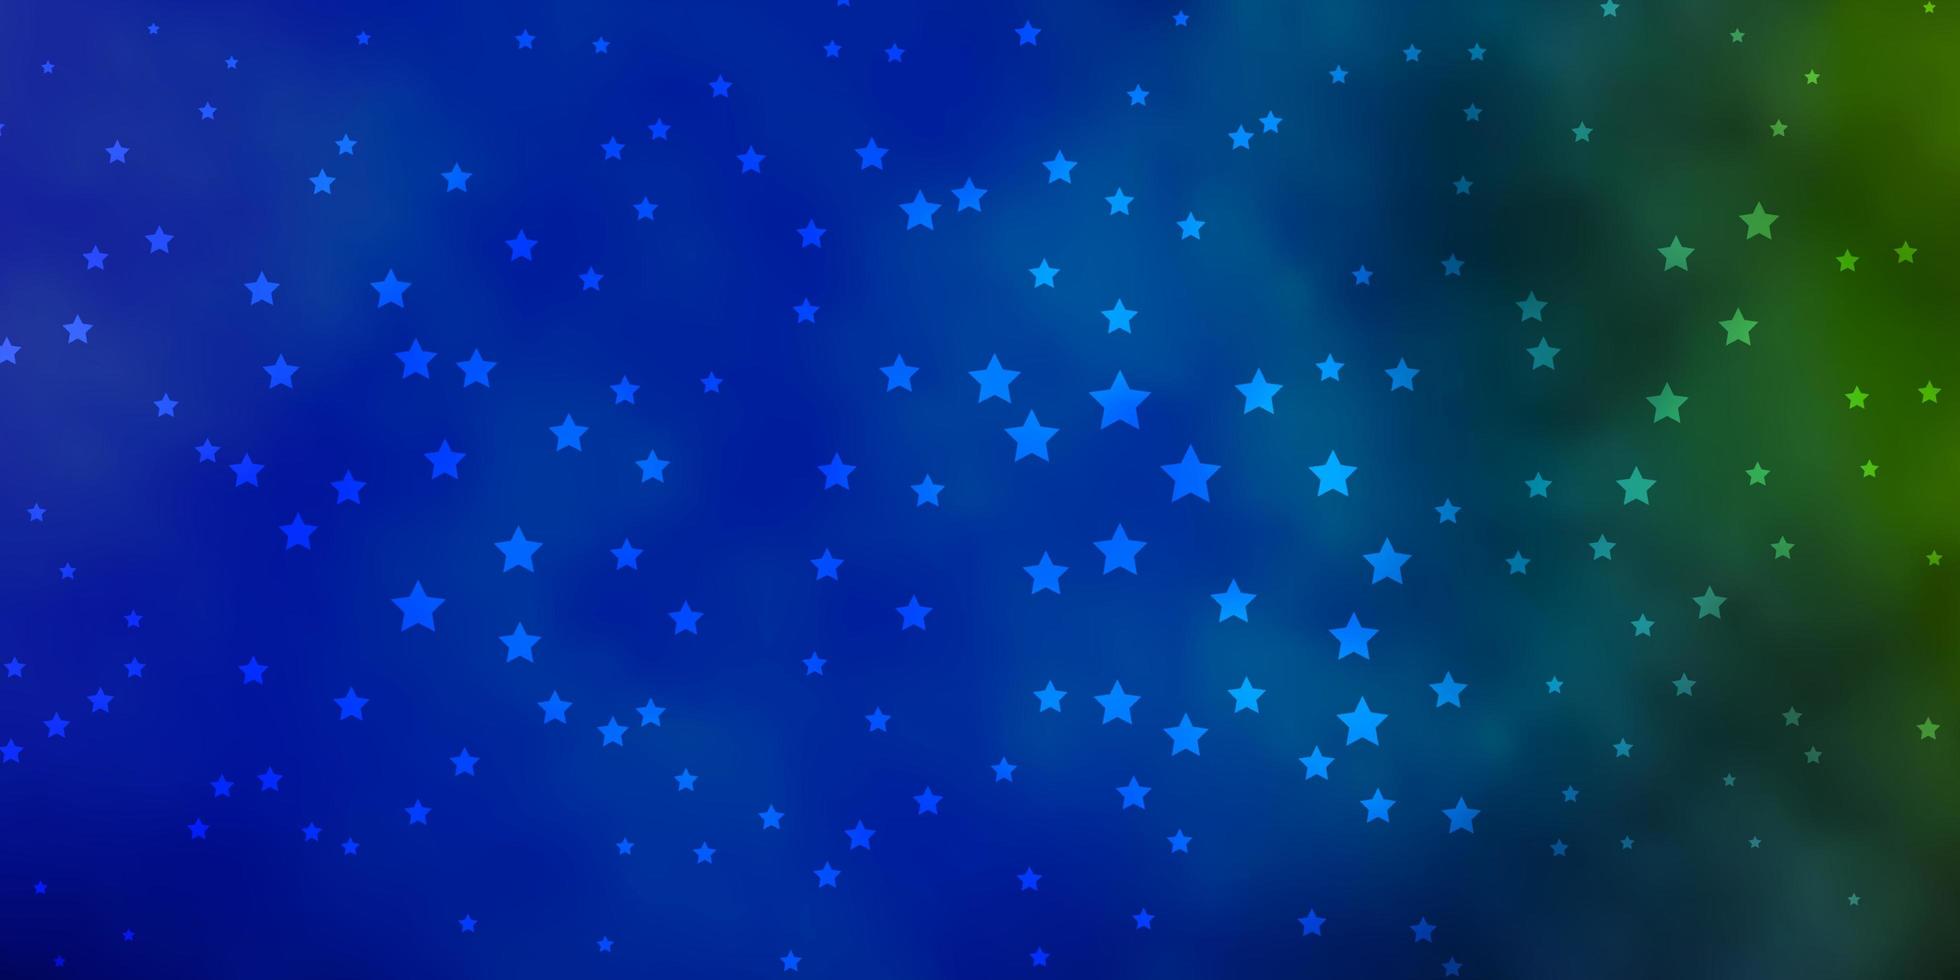 Plantilla de vector azul oscuro, verde con estrellas de neón. Ilustración colorida brillante con estrellas grandes y pequeñas. diseño para la promoción de su negocio.